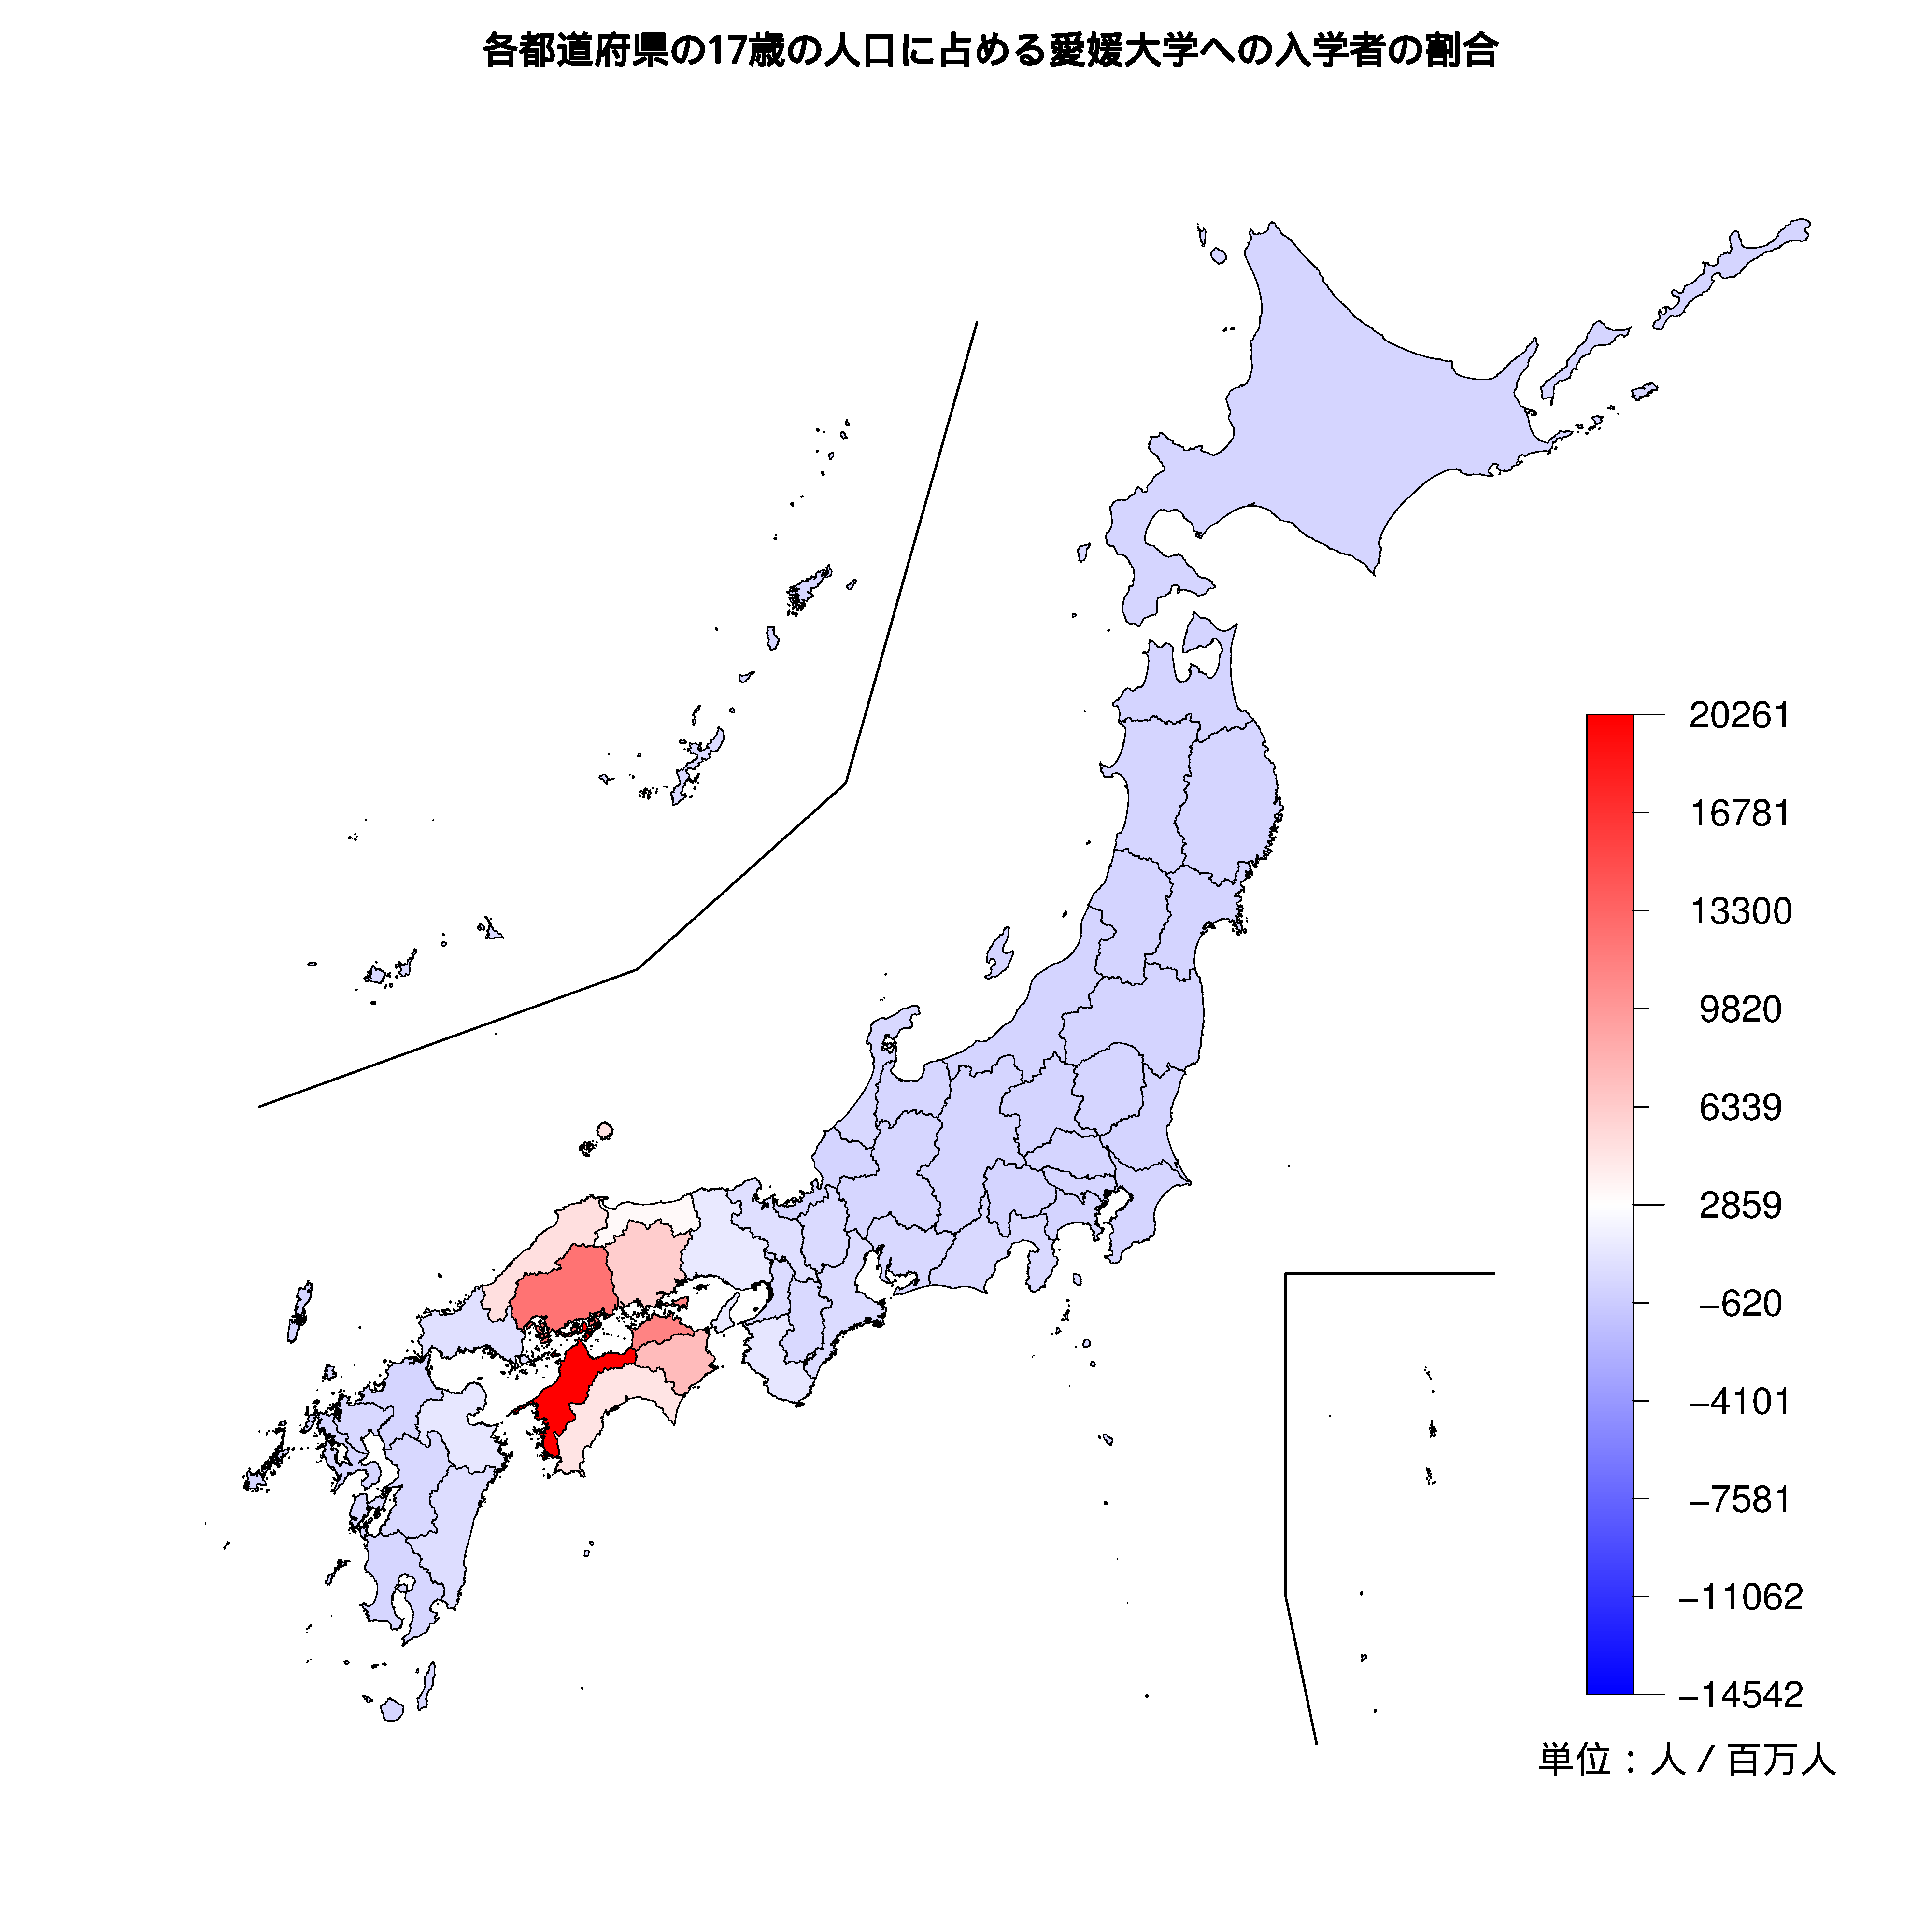 愛媛大学への入学者が多い都道府県の色分け地図